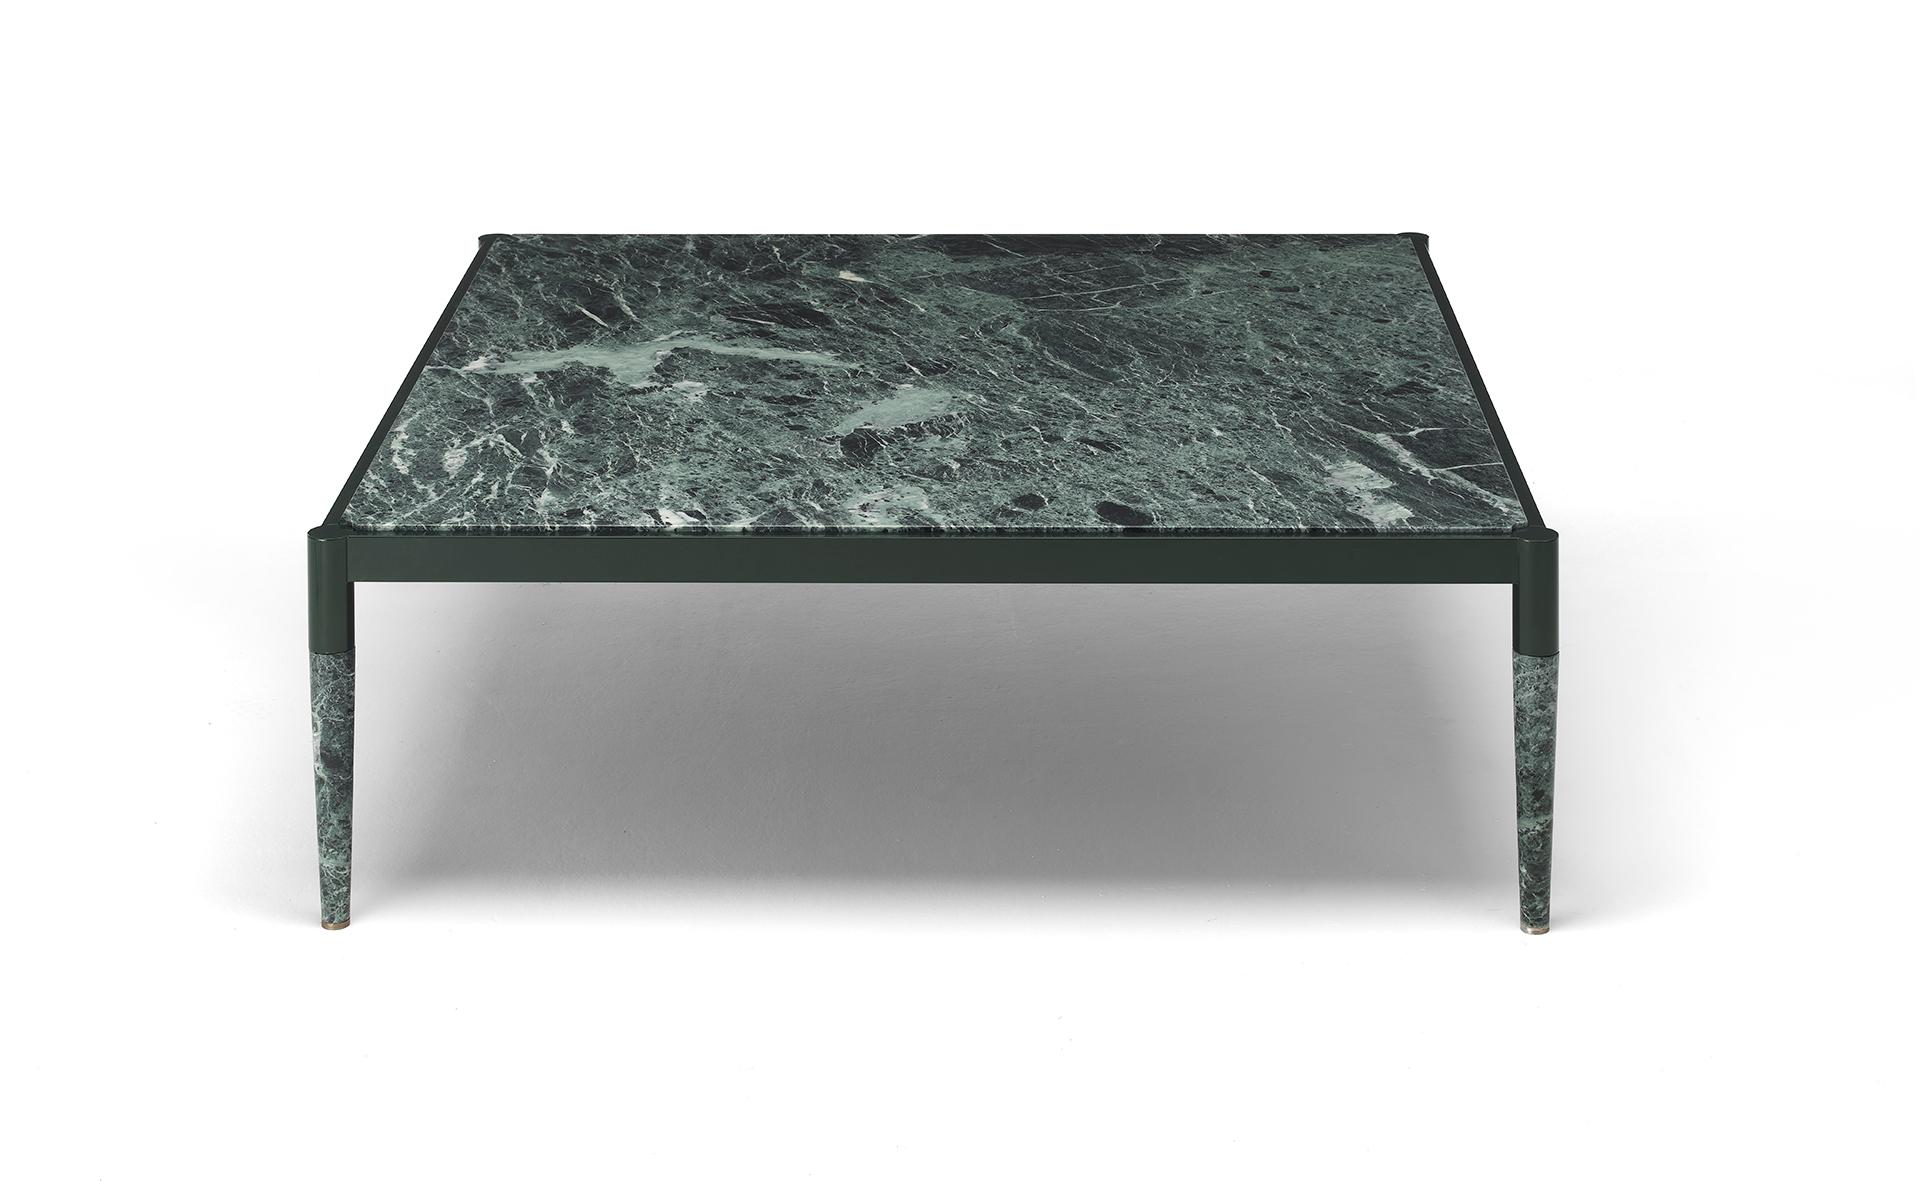 Dans la table basse Bic, un cadre central en aluminium soutient le plateau et les pieds, tous deux en marbre. L'effet visuel qui en résulte est celui d'une pièce de pierre solide maintenue par une couronne métallique minimaliste et géométrique. Le